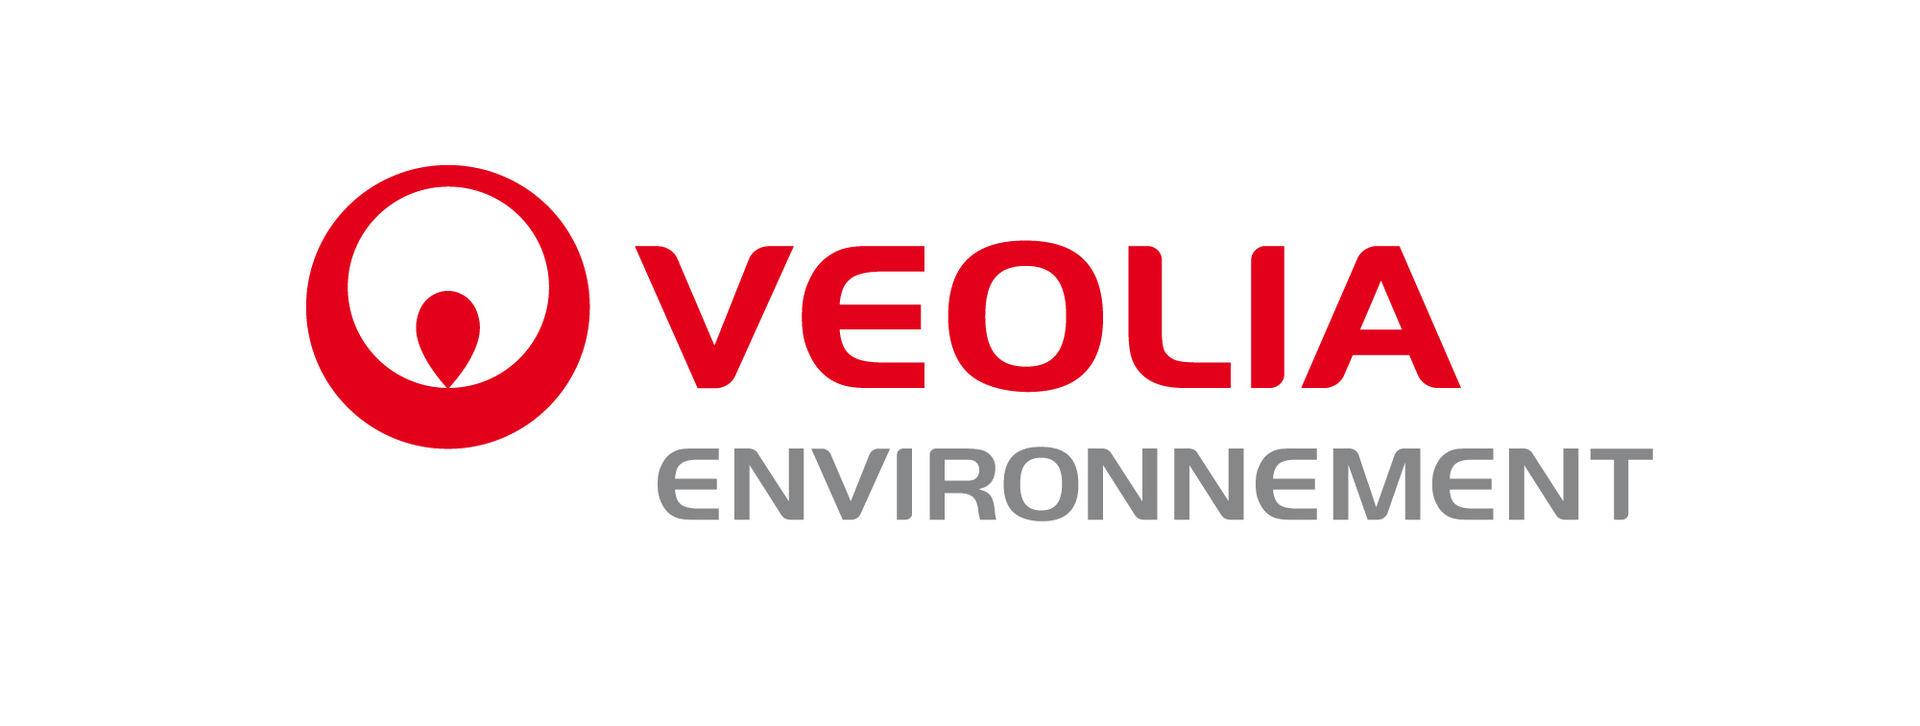 Картинки по запросу Veolia Environnement